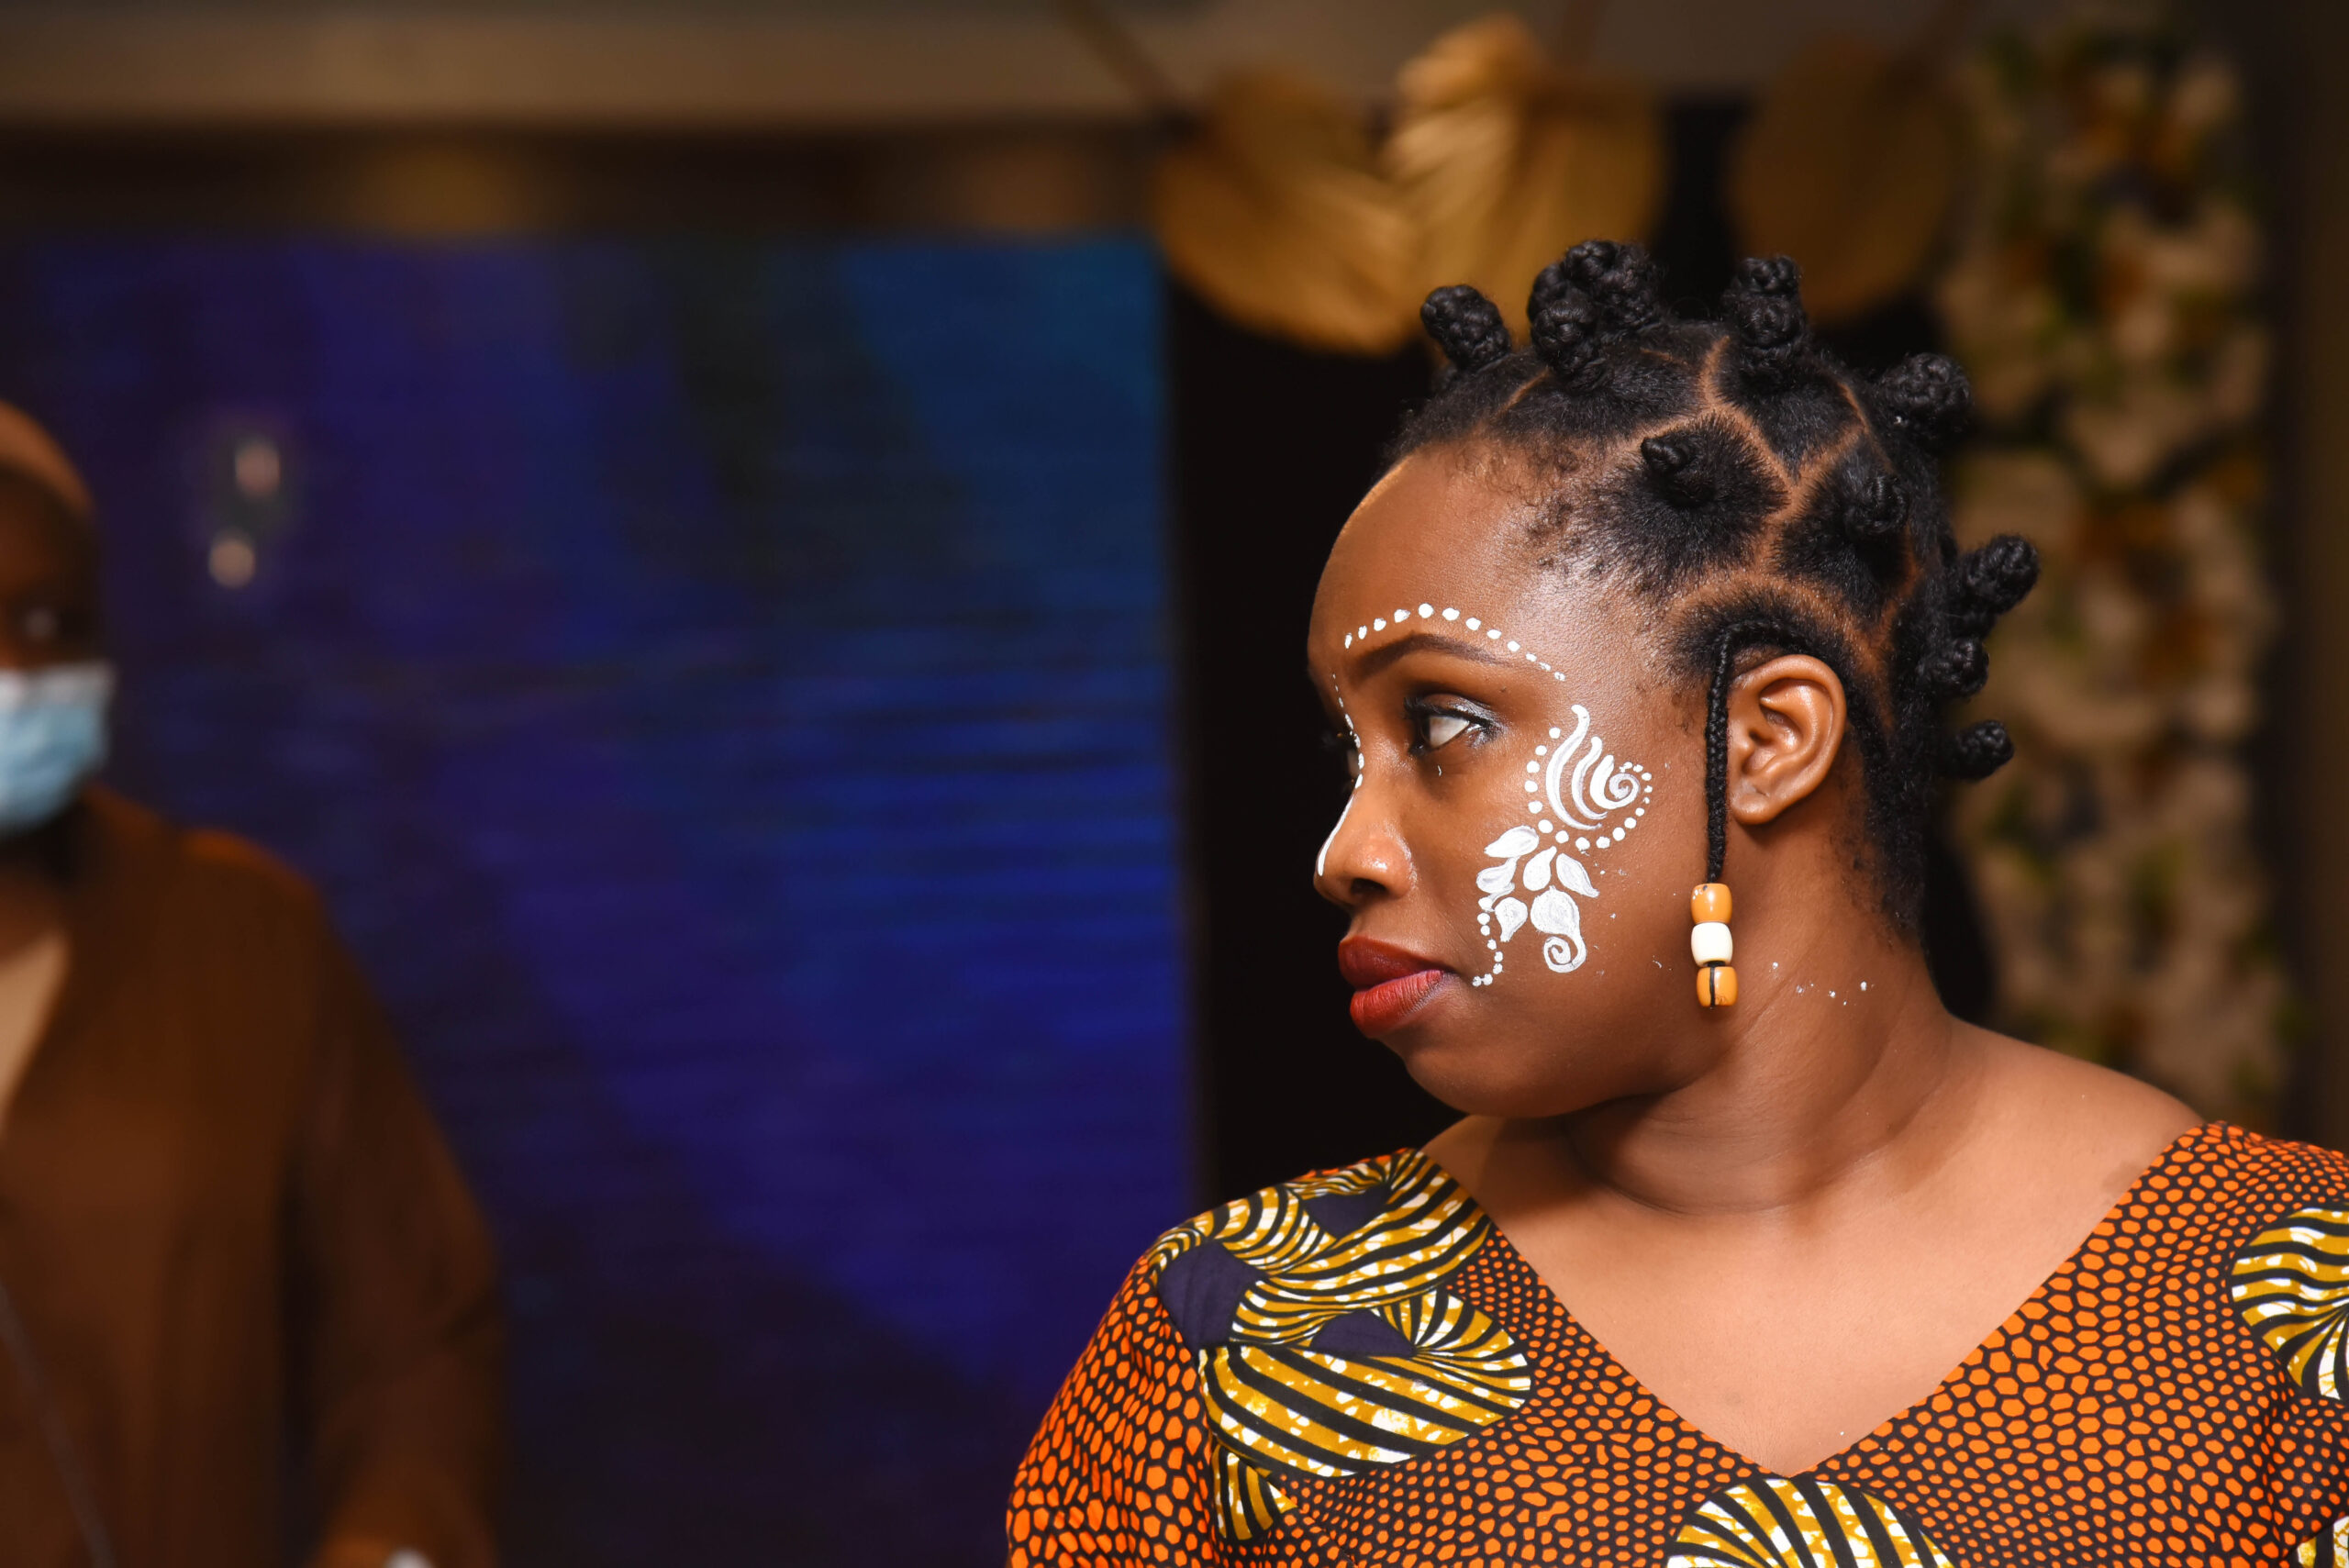 MRS. NNENA FAKOYA-SMITH AT THE ACE AWARDS 2021